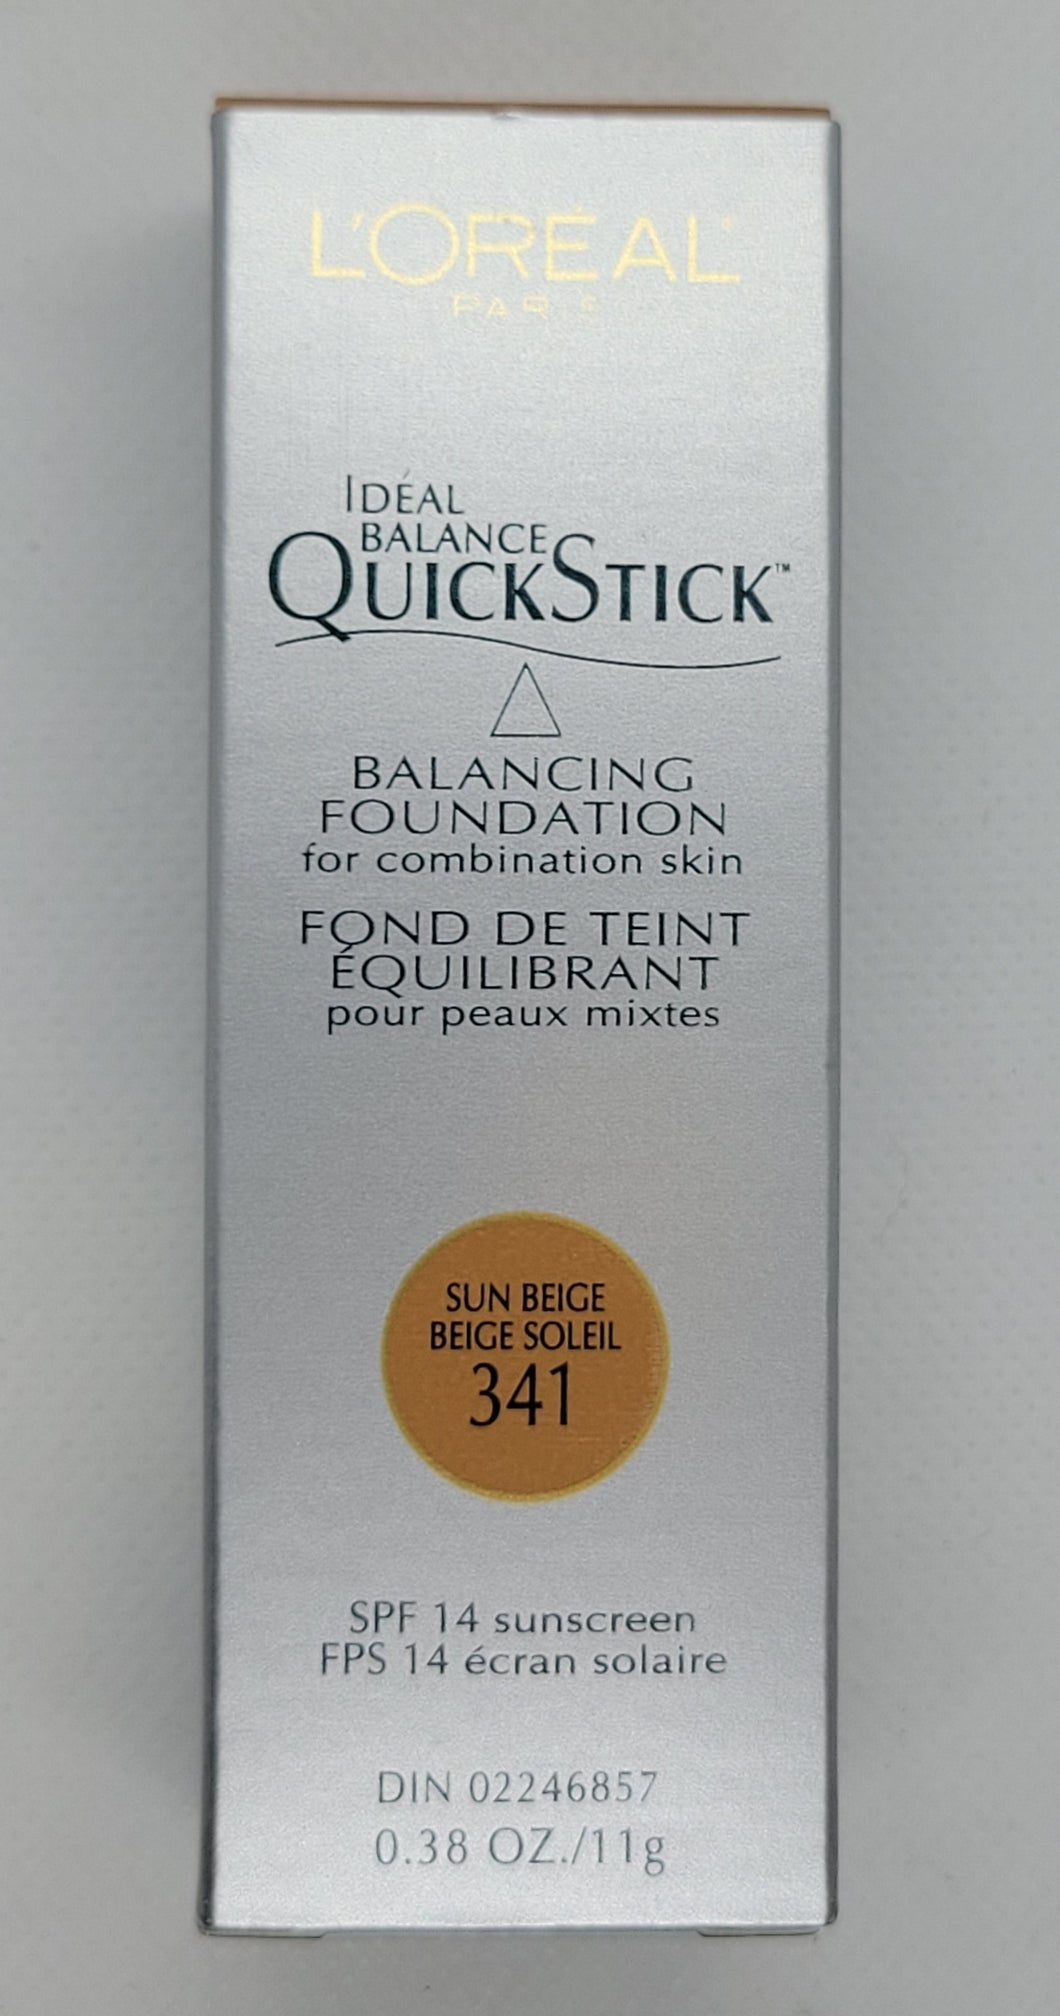 L'oreal Ideal Balance Quickstick Balancing Foundation Stick